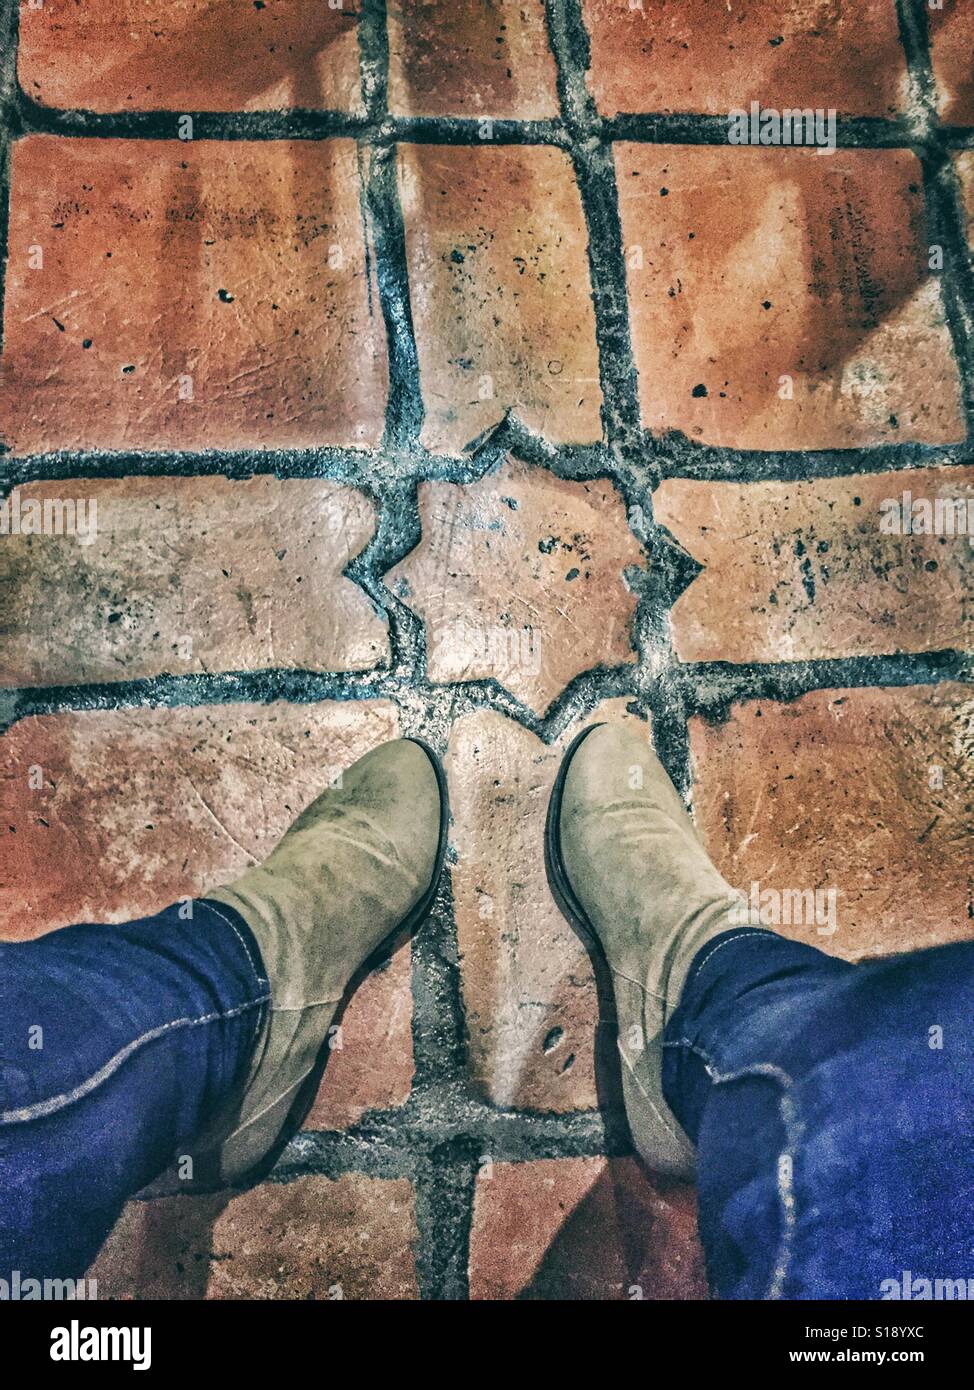 Boots on Spanish Terracotta tiled floor Stock Photo